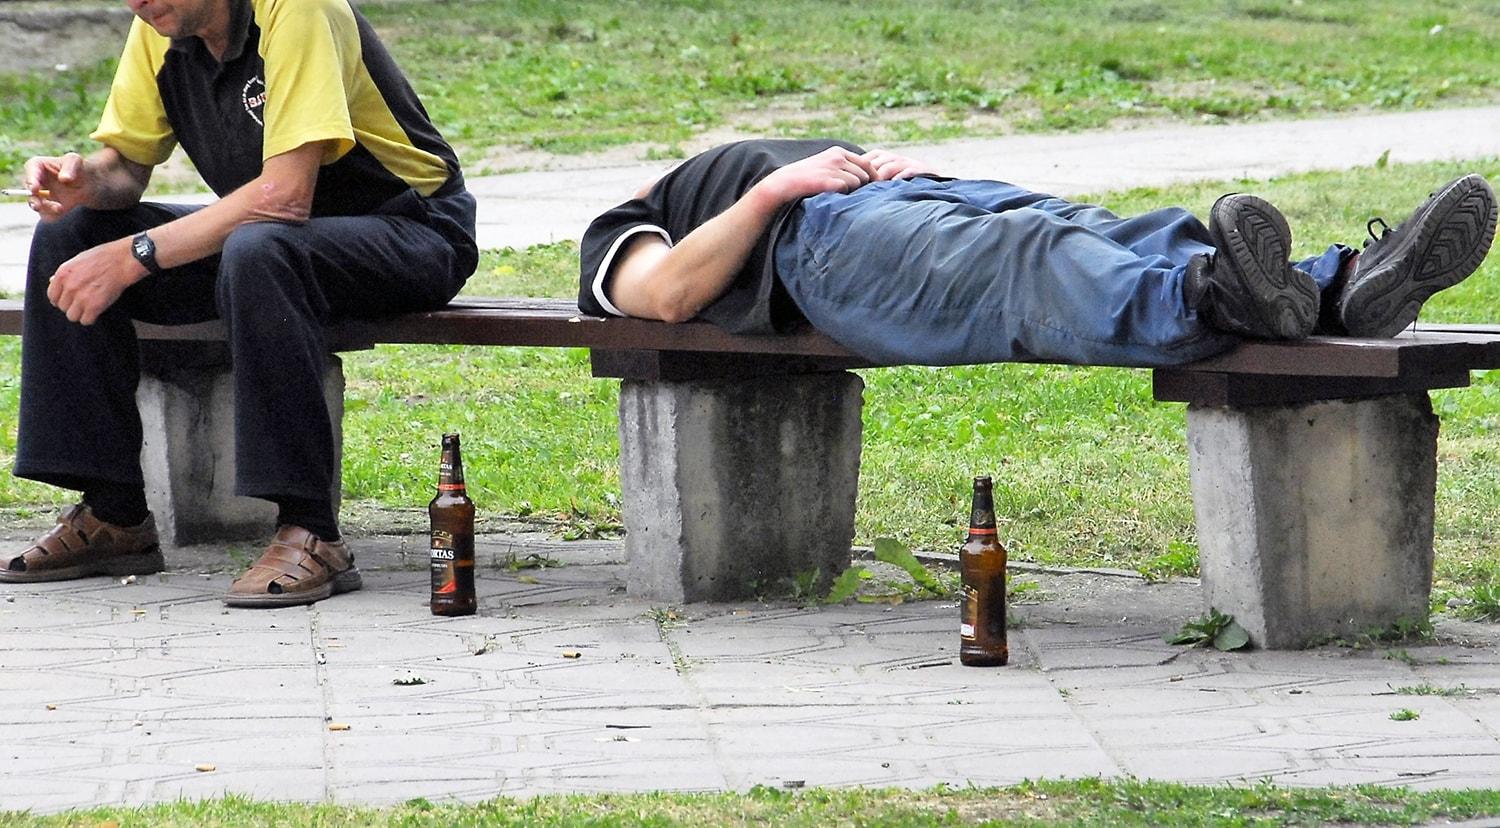 Nuo alkoholizmo bus koduojama ir Ukmergėje / Gedimino Nemunaičio nuotr. Alkoholizmo priežastys labai įvairios